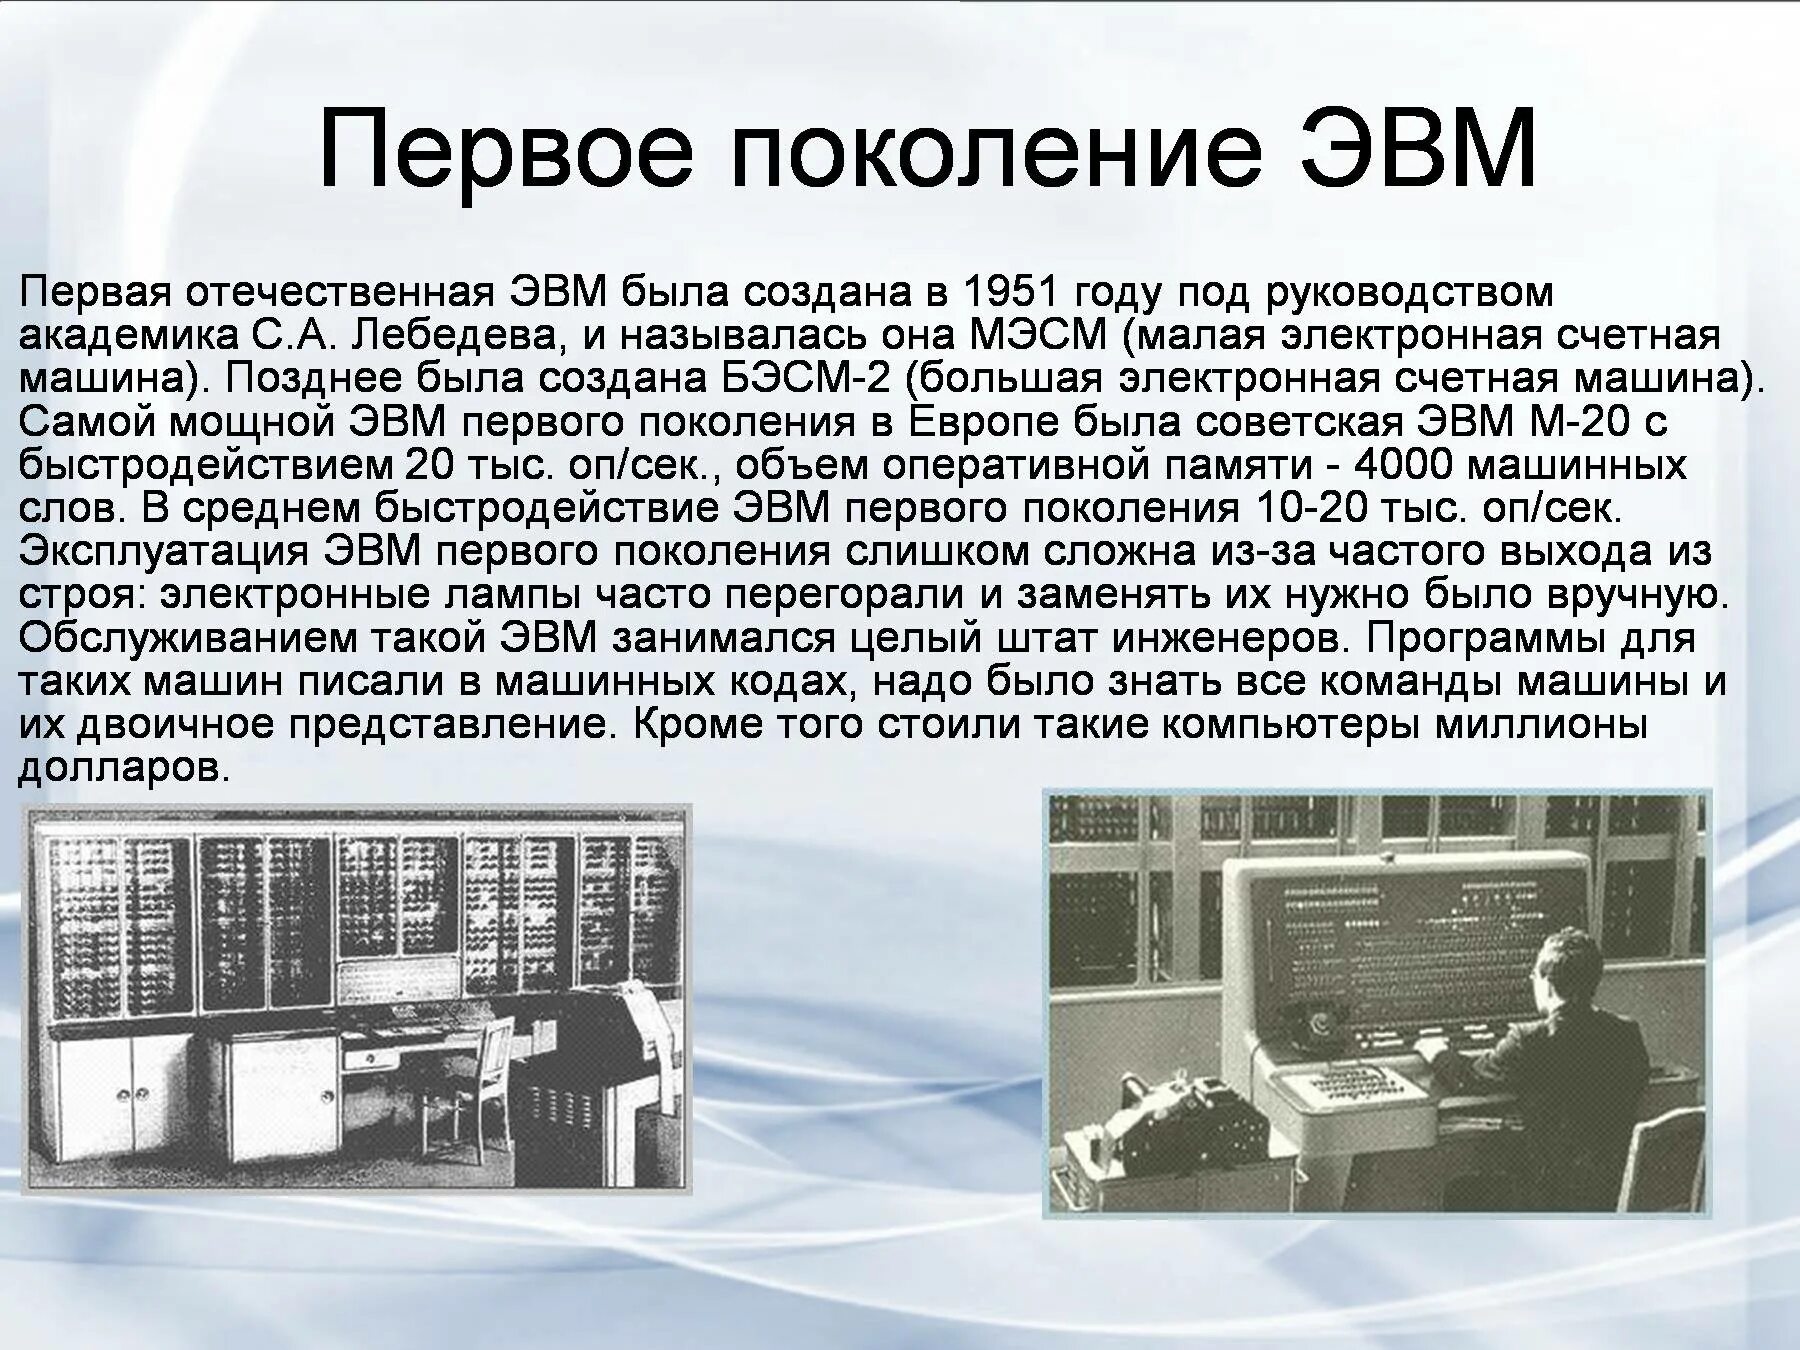 История развития вычислительной техники 3 поколения ЭВМ. ЭВМ первого поколения: «БЭСМ-2». Первое поколение ЭВМ. Изображение ЭВМ 1 поколения. Кто создал электроника